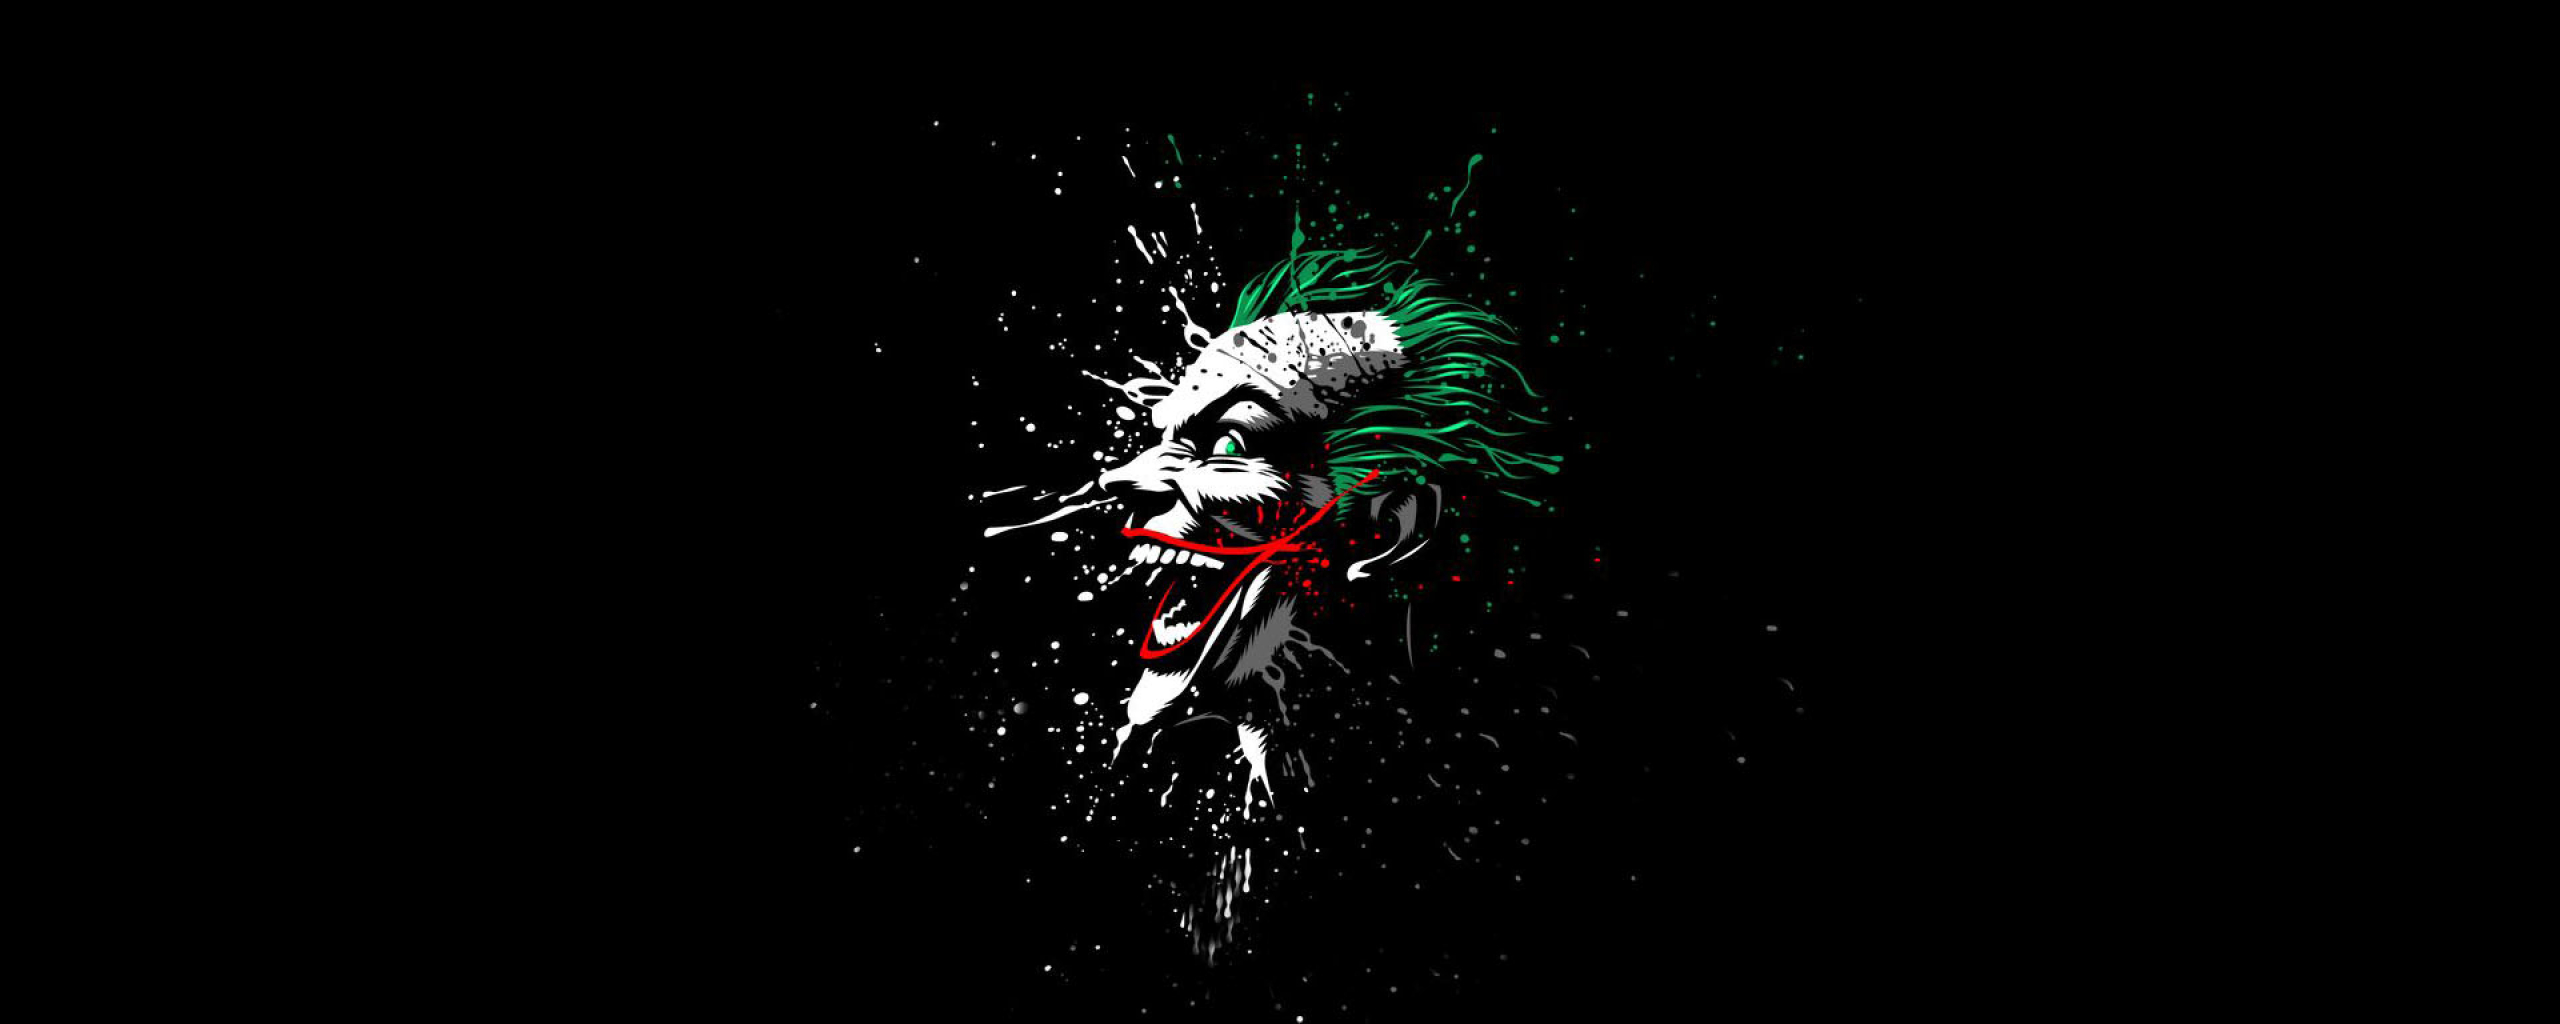 Joker Artwork, Full HD Wallpaper